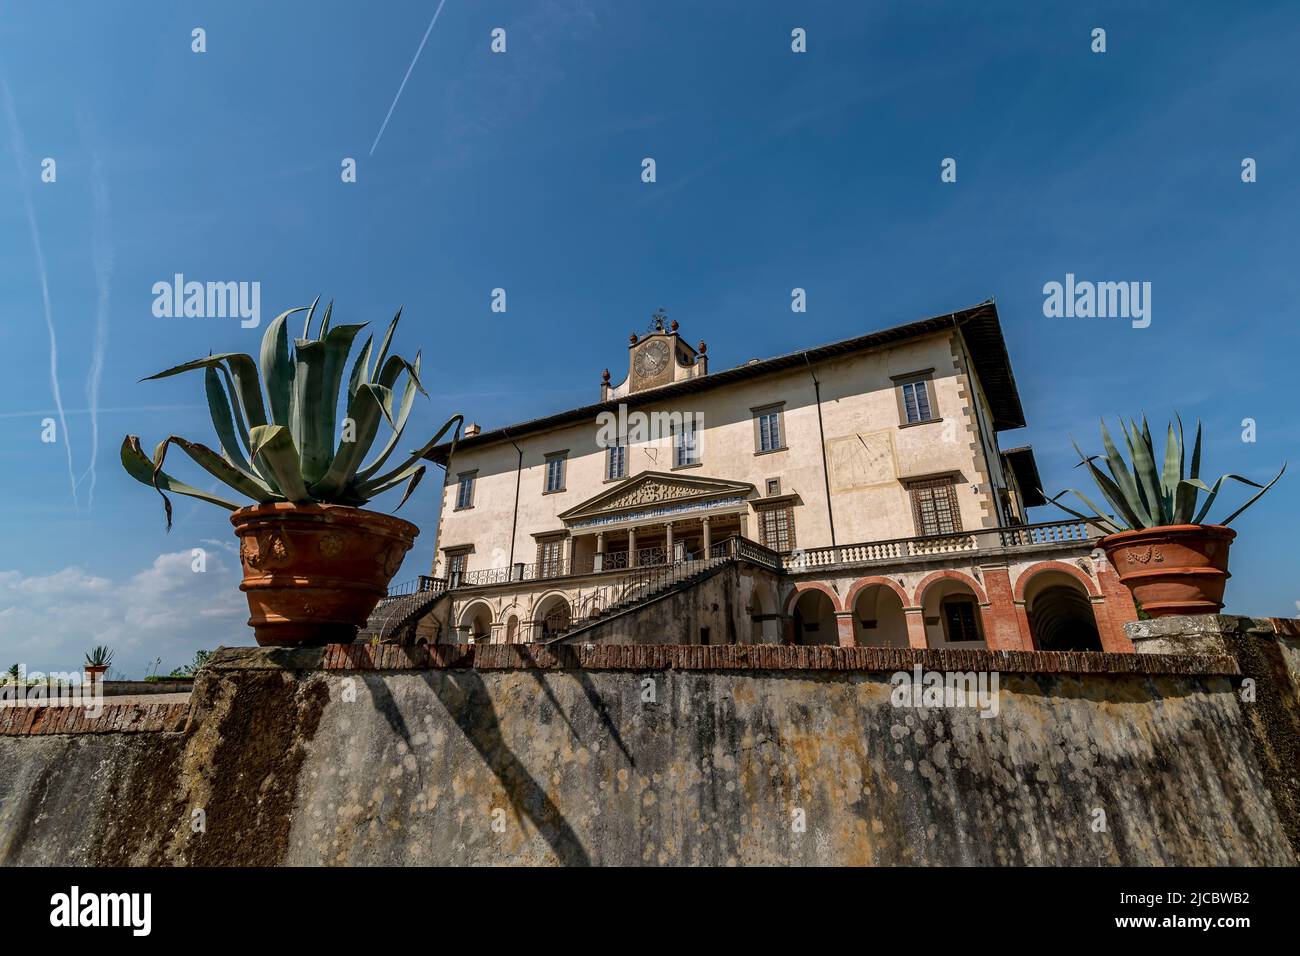 Die antike Medici-Villa von Poggio a Caiano, Prato, Italien Stockfoto